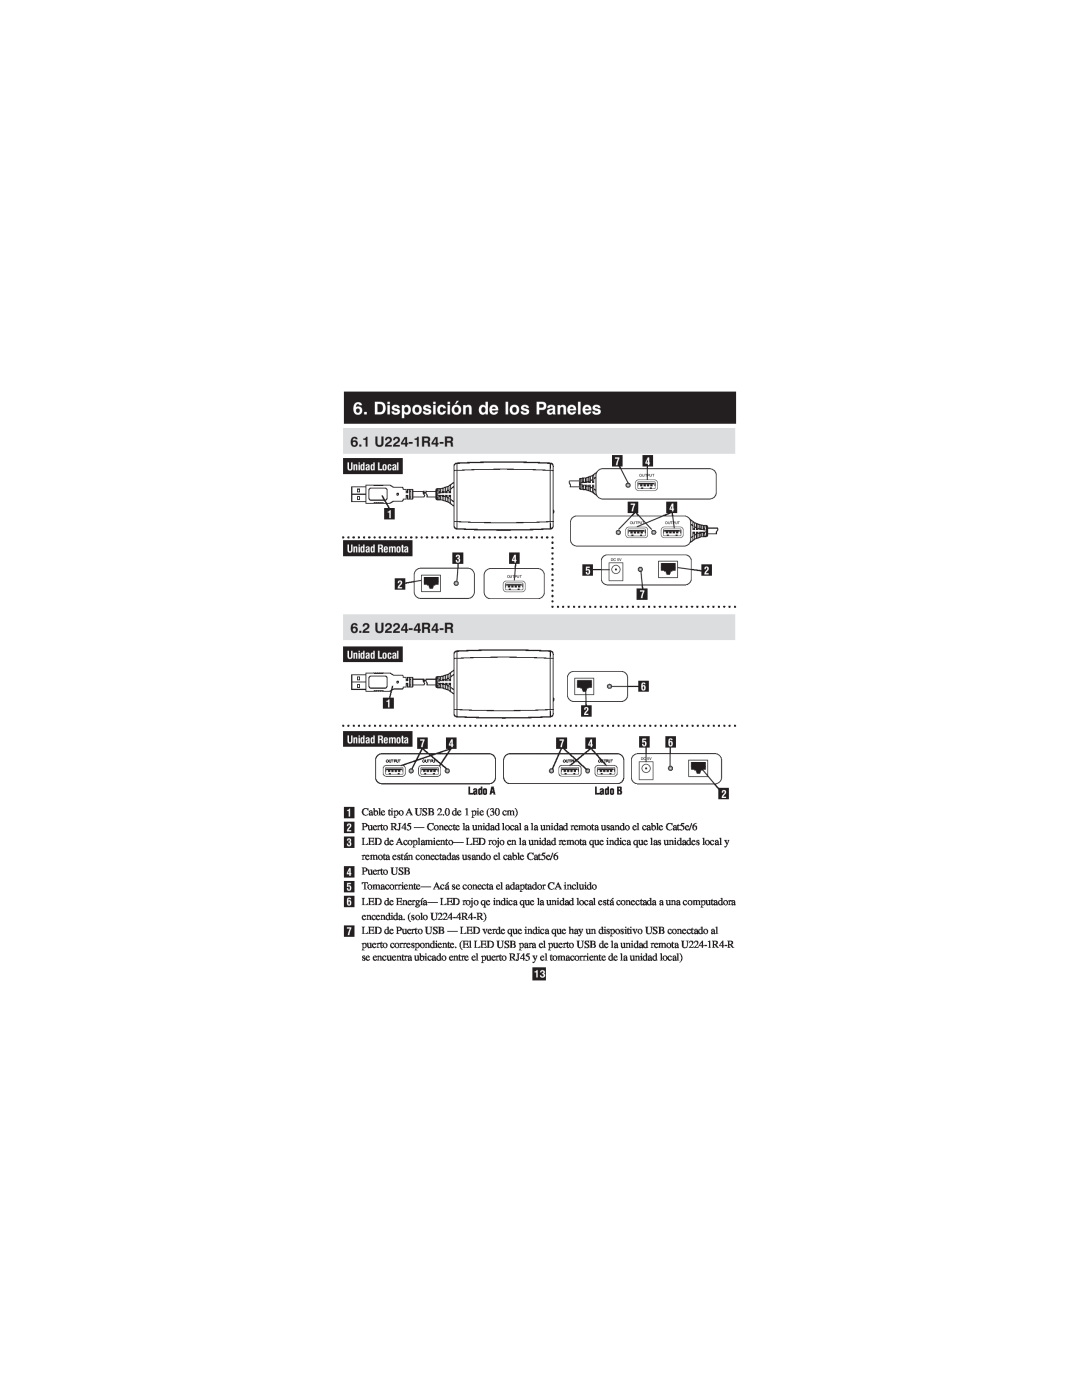 Tripp Lite owner manual Disposición de los Paneles, 6.1 U224-1R4-R, 6.2 U224-4R4-R, Unidad Local Unidad Remota, Lado A 